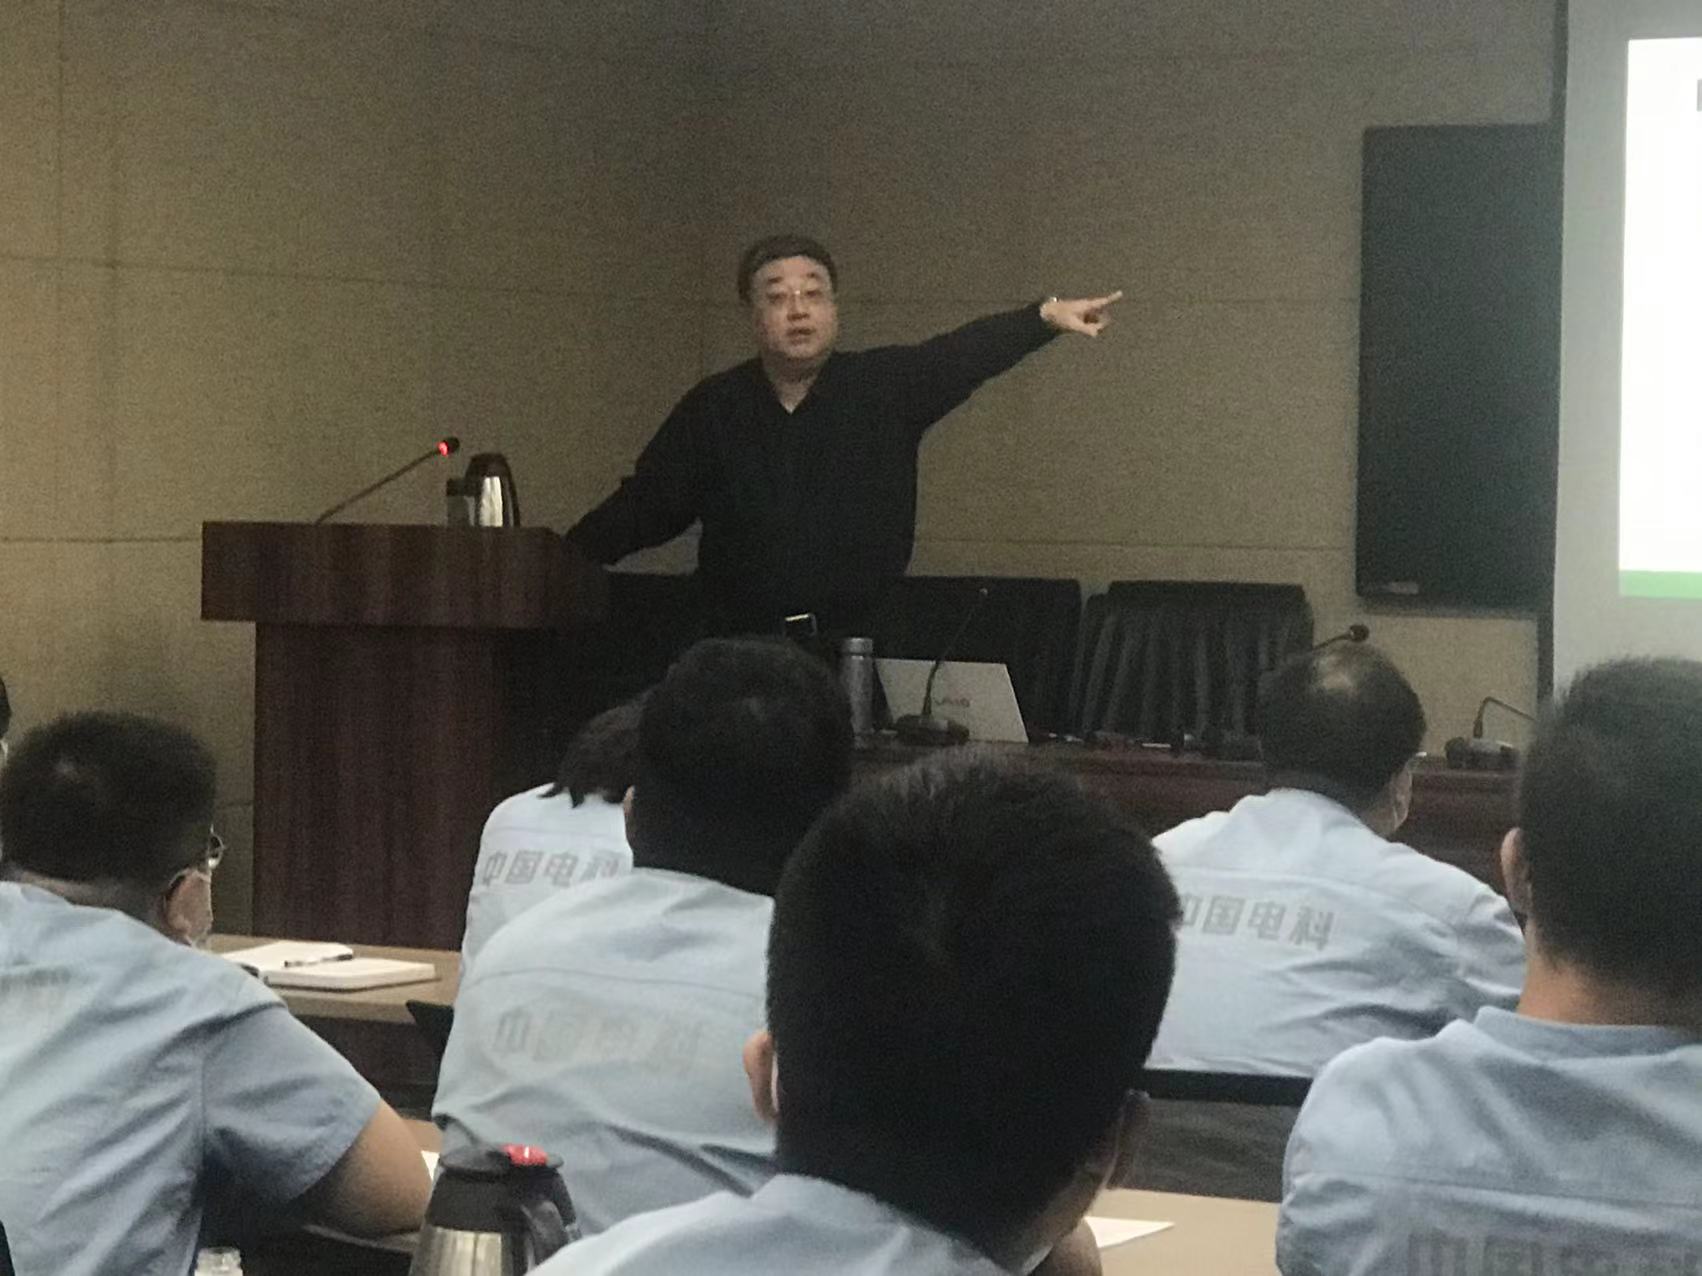 6月11日阎金岱老师给中国电子科技集团公司第十八研究所讲授《中基层执行力》课程圆满结束